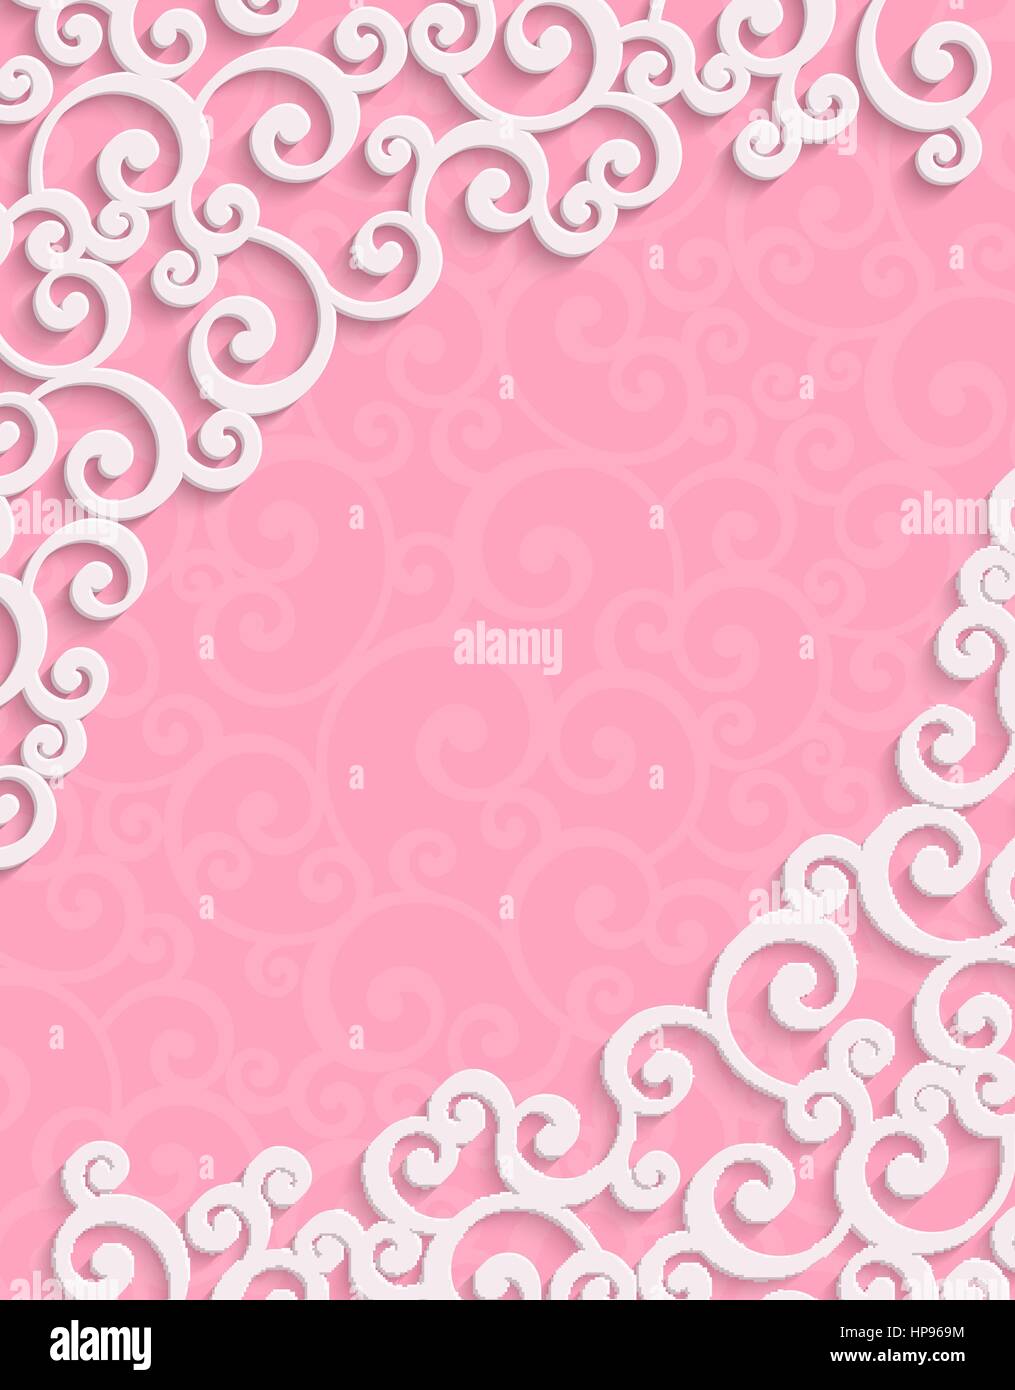 Rosa 3d Floral Swirl sfondo verticale con Curl Pattern per il giorno di San Valentino o invito a nozze Card. Vettore di astratta Vintage Design Template Illustrazione Vettoriale